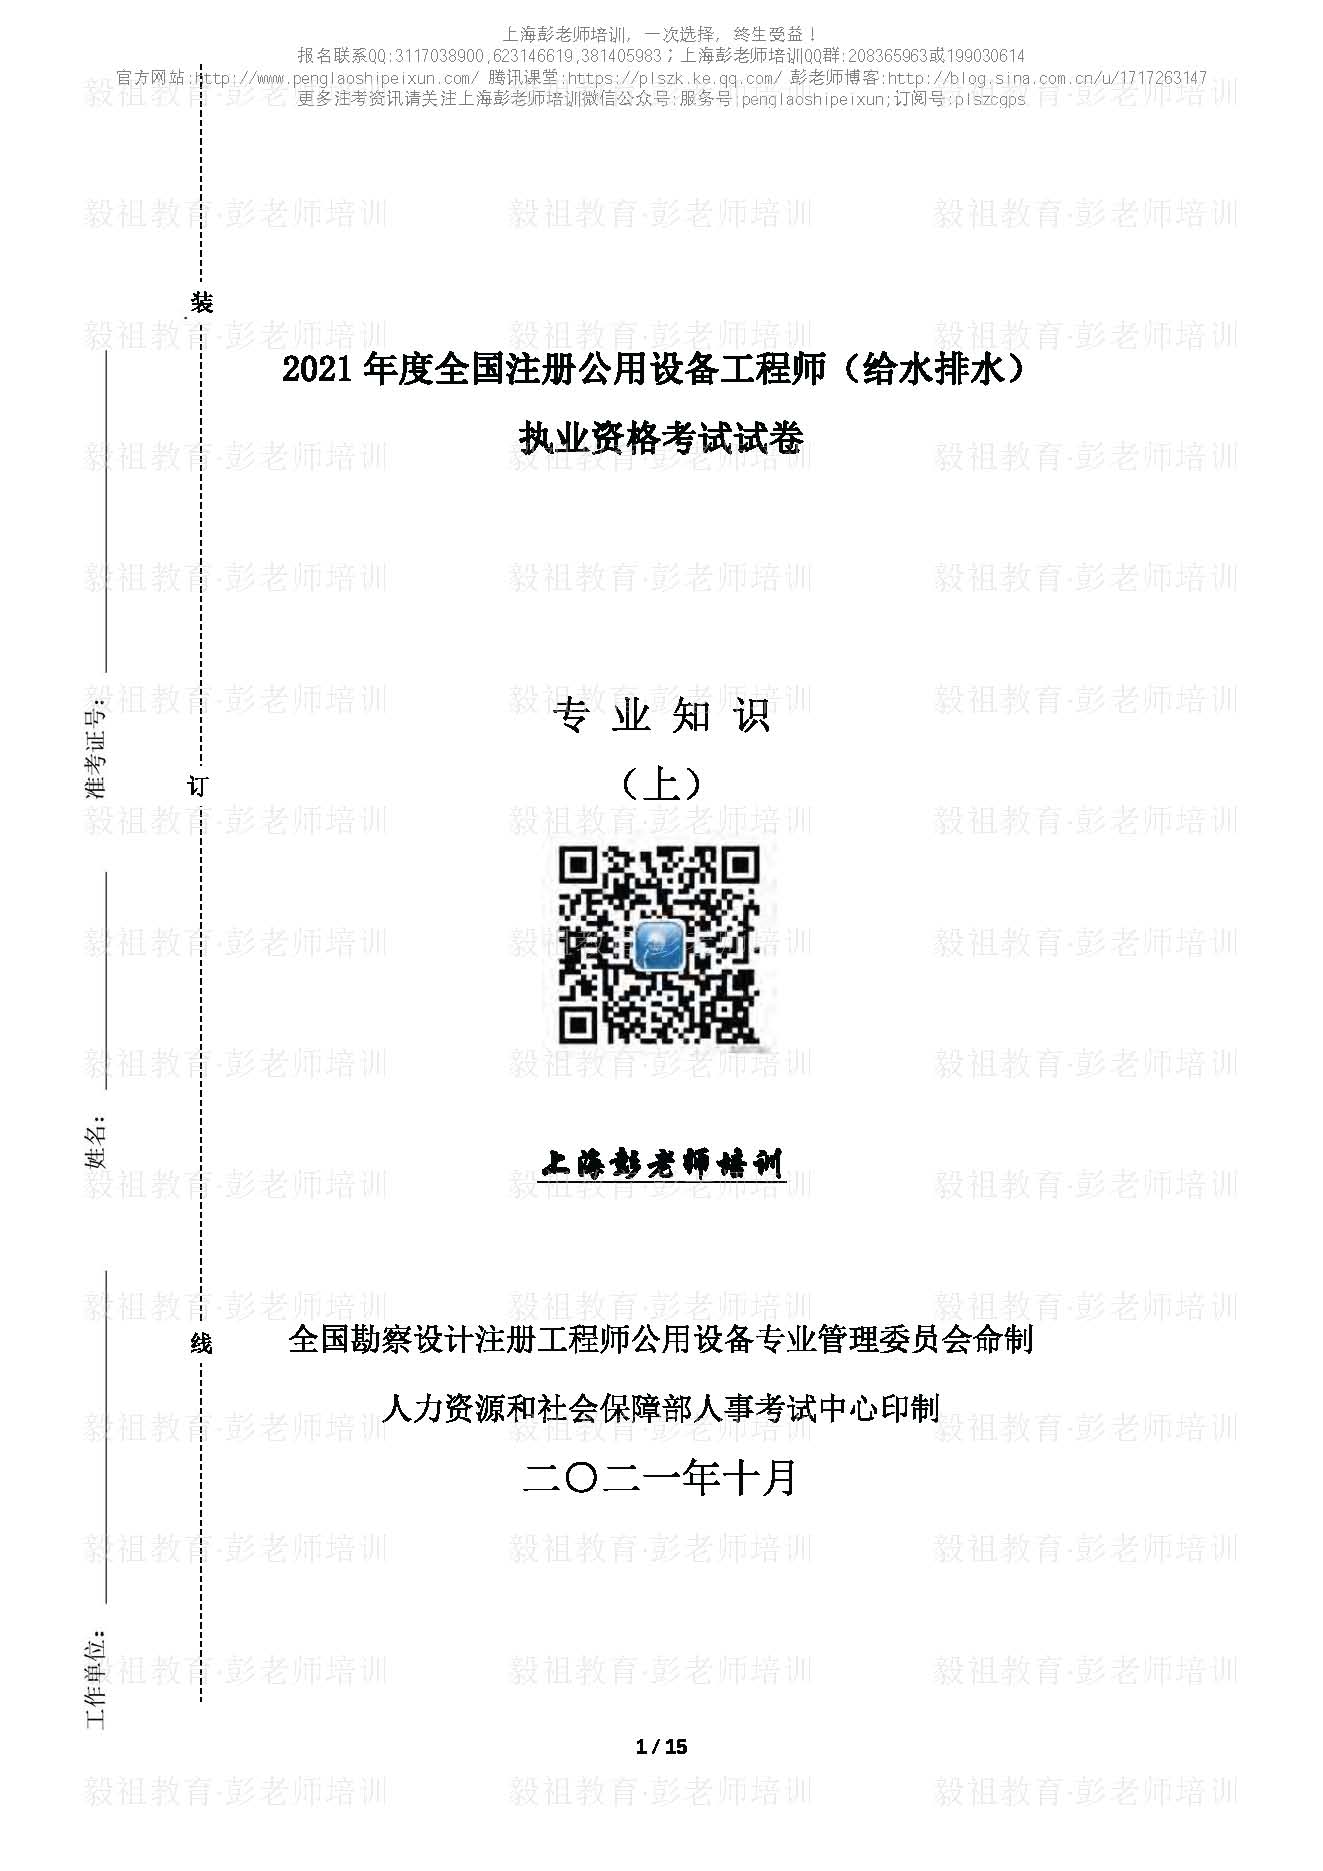 2021注册给排水专业知识真题(上午)空白卷—上海彭老师培训_页面_01.jpg